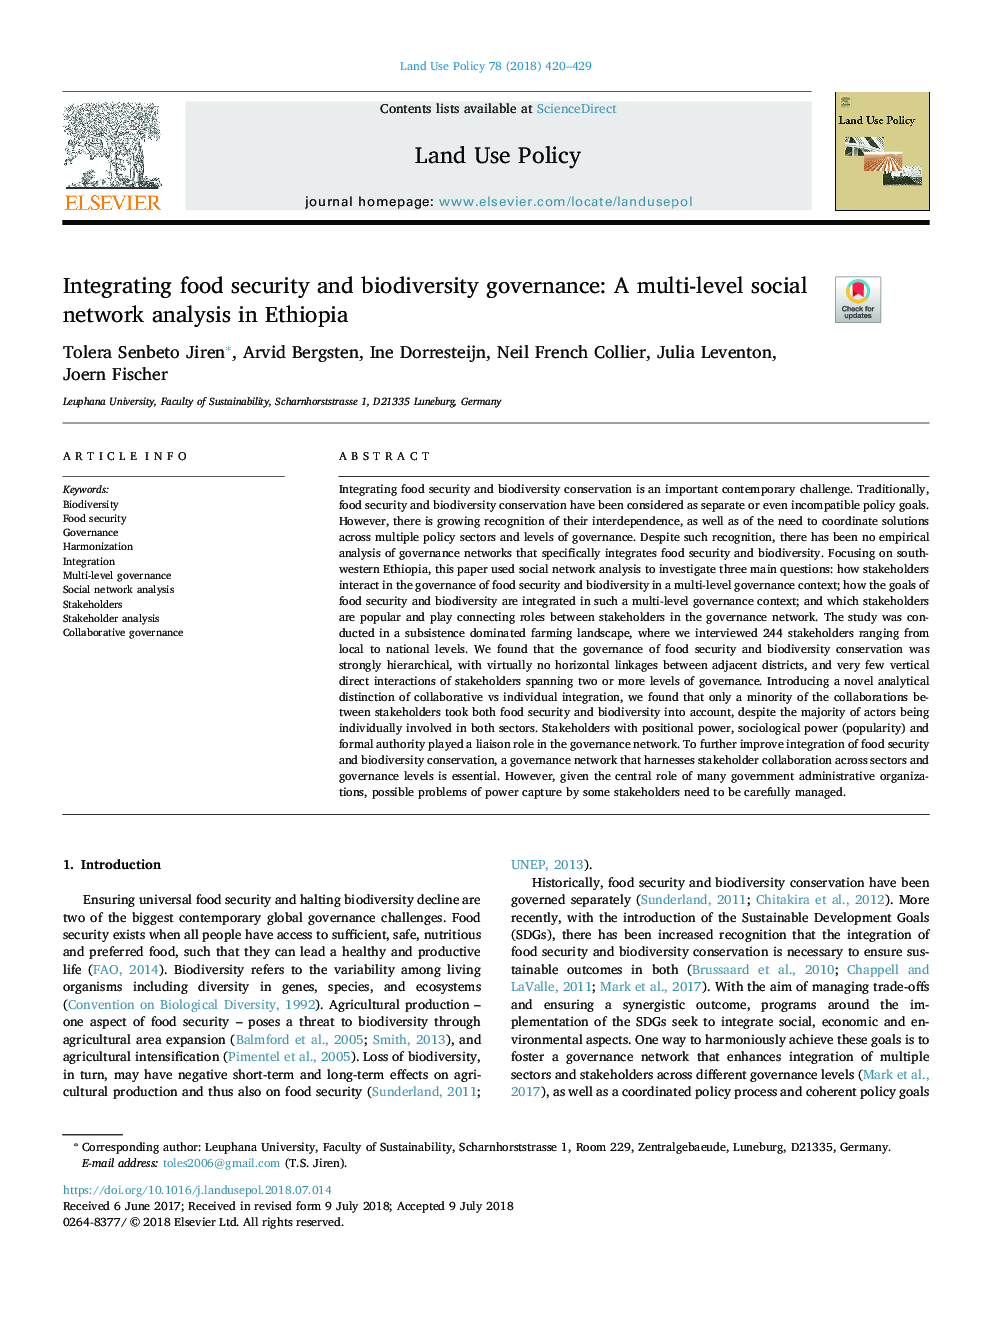 ادغام امنیت غذایی و مدیریت تنوع زیستی: تجزیه و تحلیل شبکه های چند سطحی در اتیوپی 